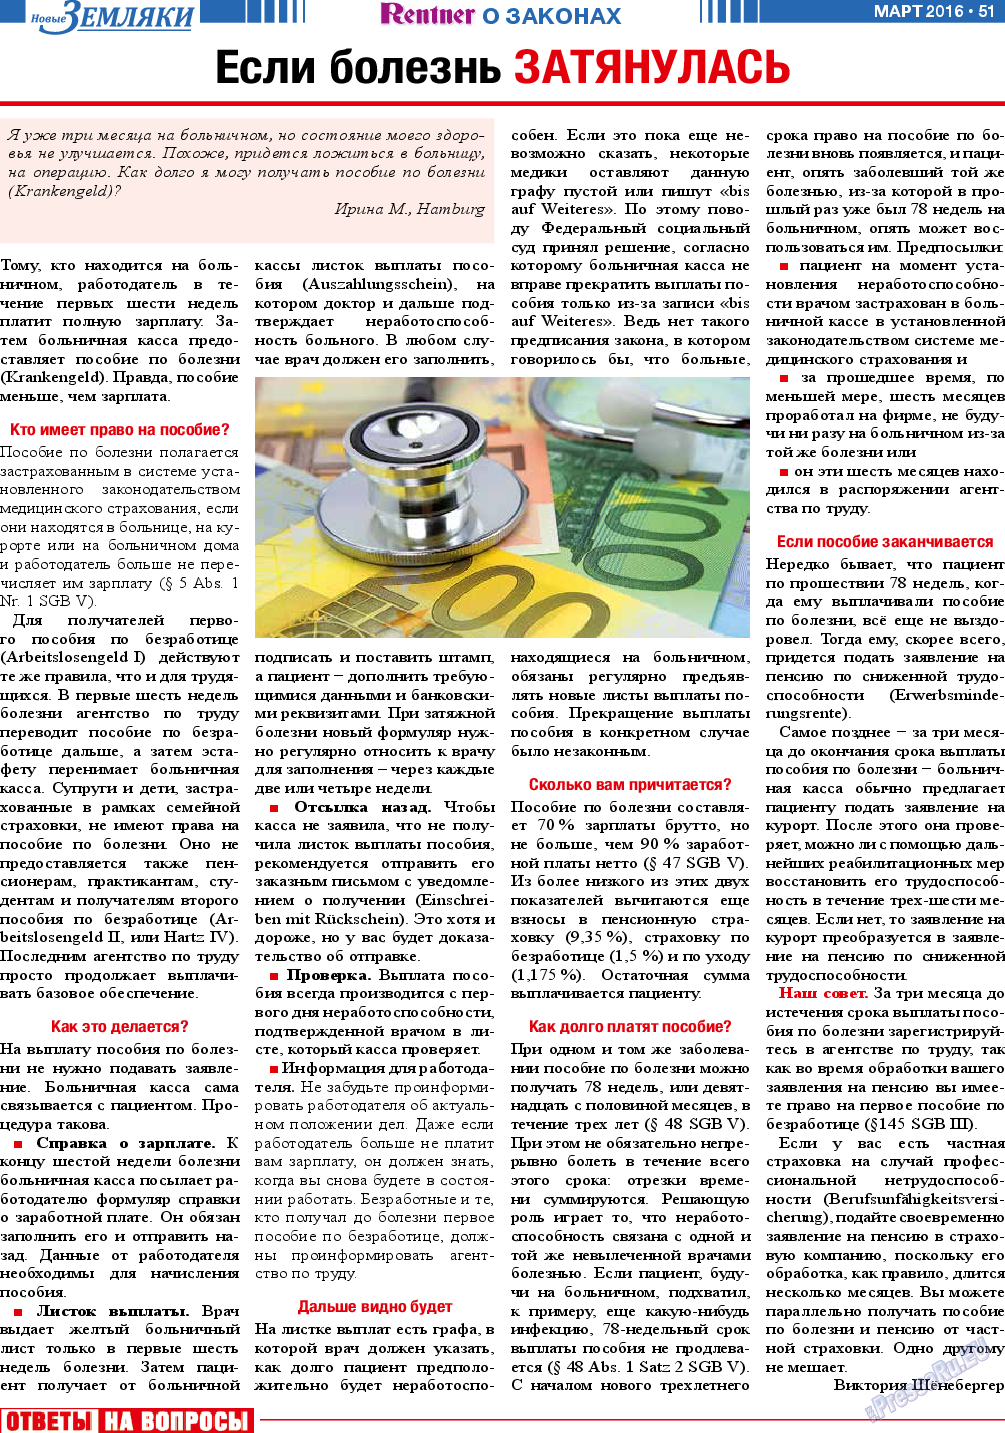 Новые Земляки, газета. 2016 №3 стр.51